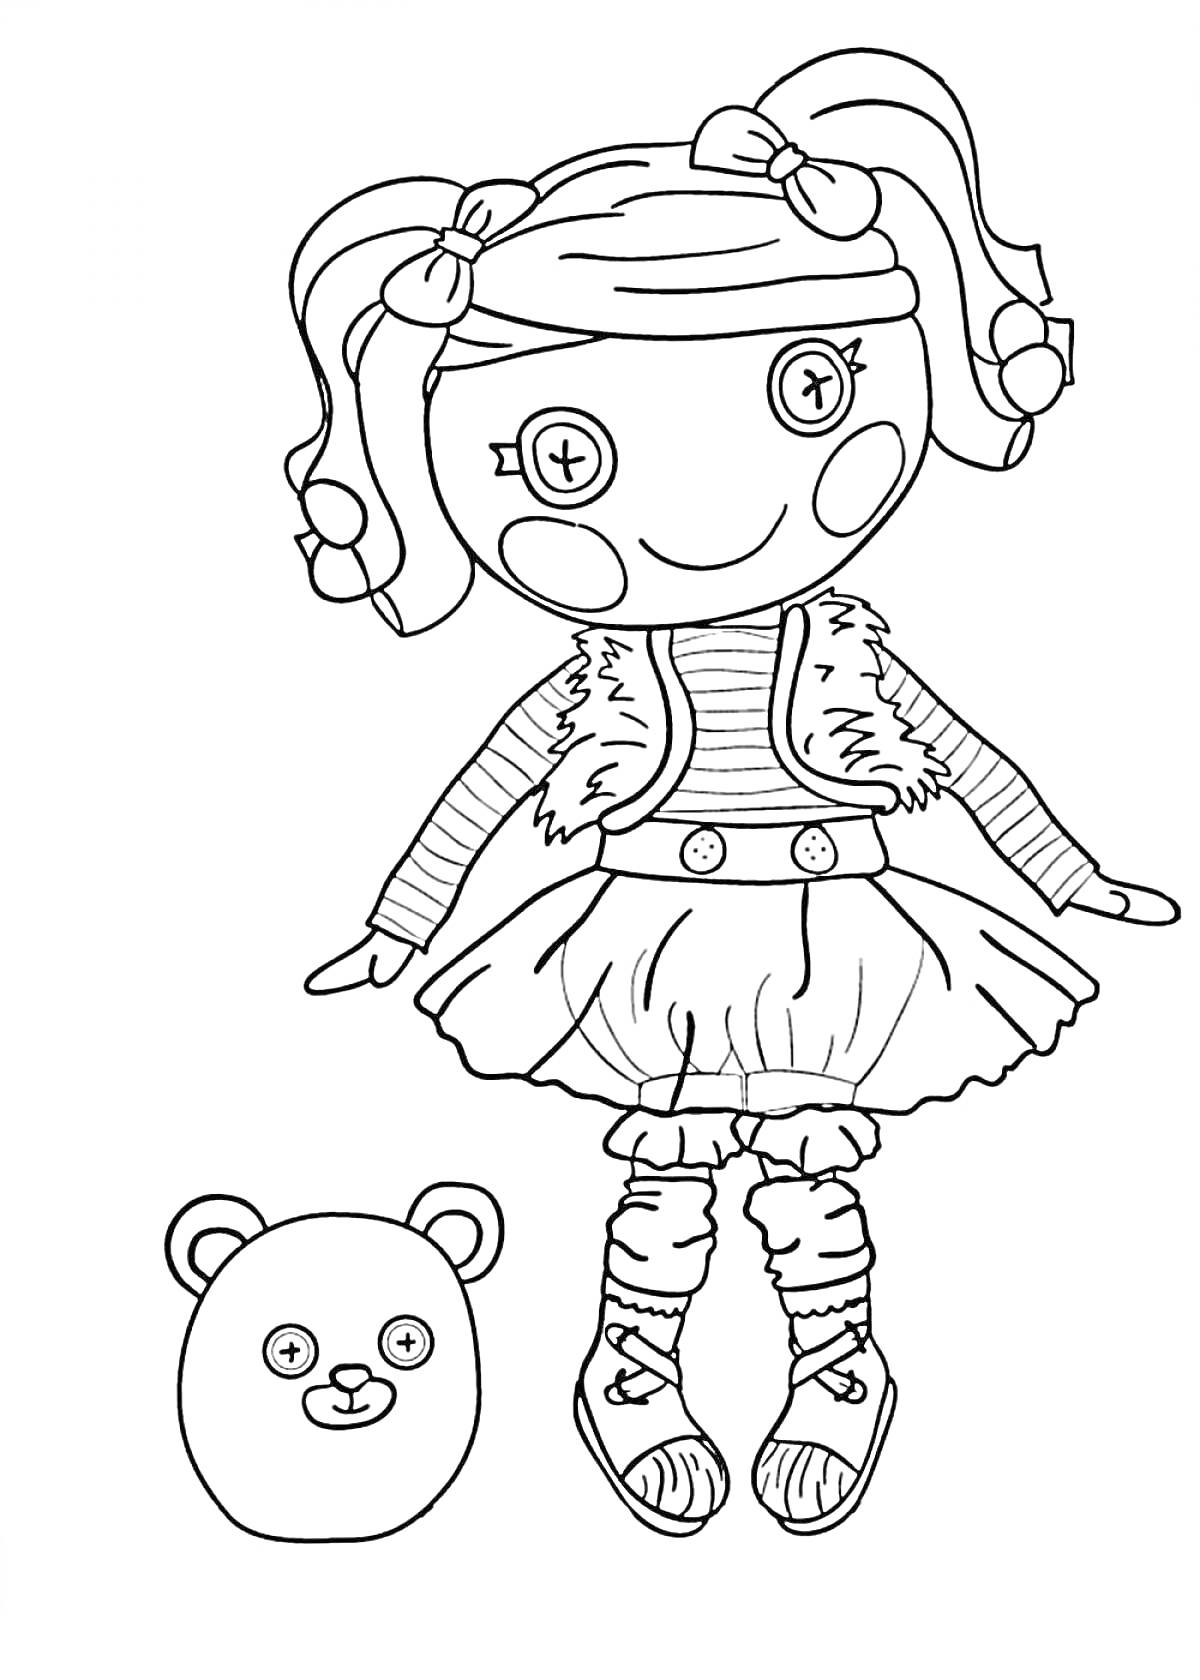 Раскраска Лалалупси с мишкой, кнопочные глаза, лента в волосах, жилетка, юбка, чулки, туфли, медведь с носом пуговицей